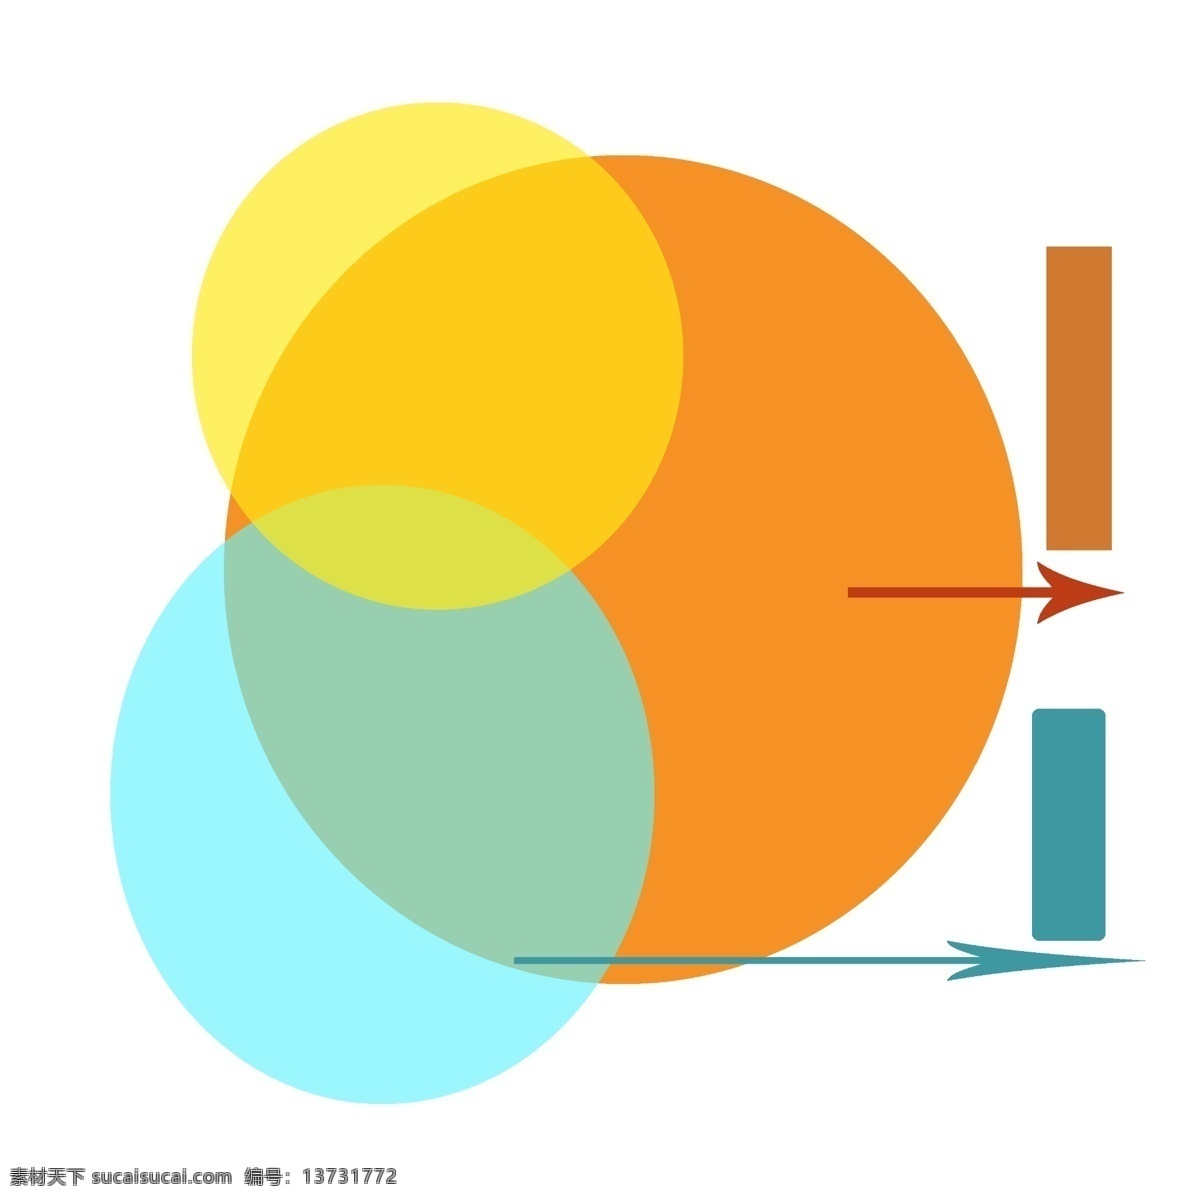 金融 理财 大数 分析图 分析图表 黄色 蓝色 橙色 金融分析 大数据分析图 大数据 箭头 数据分析图